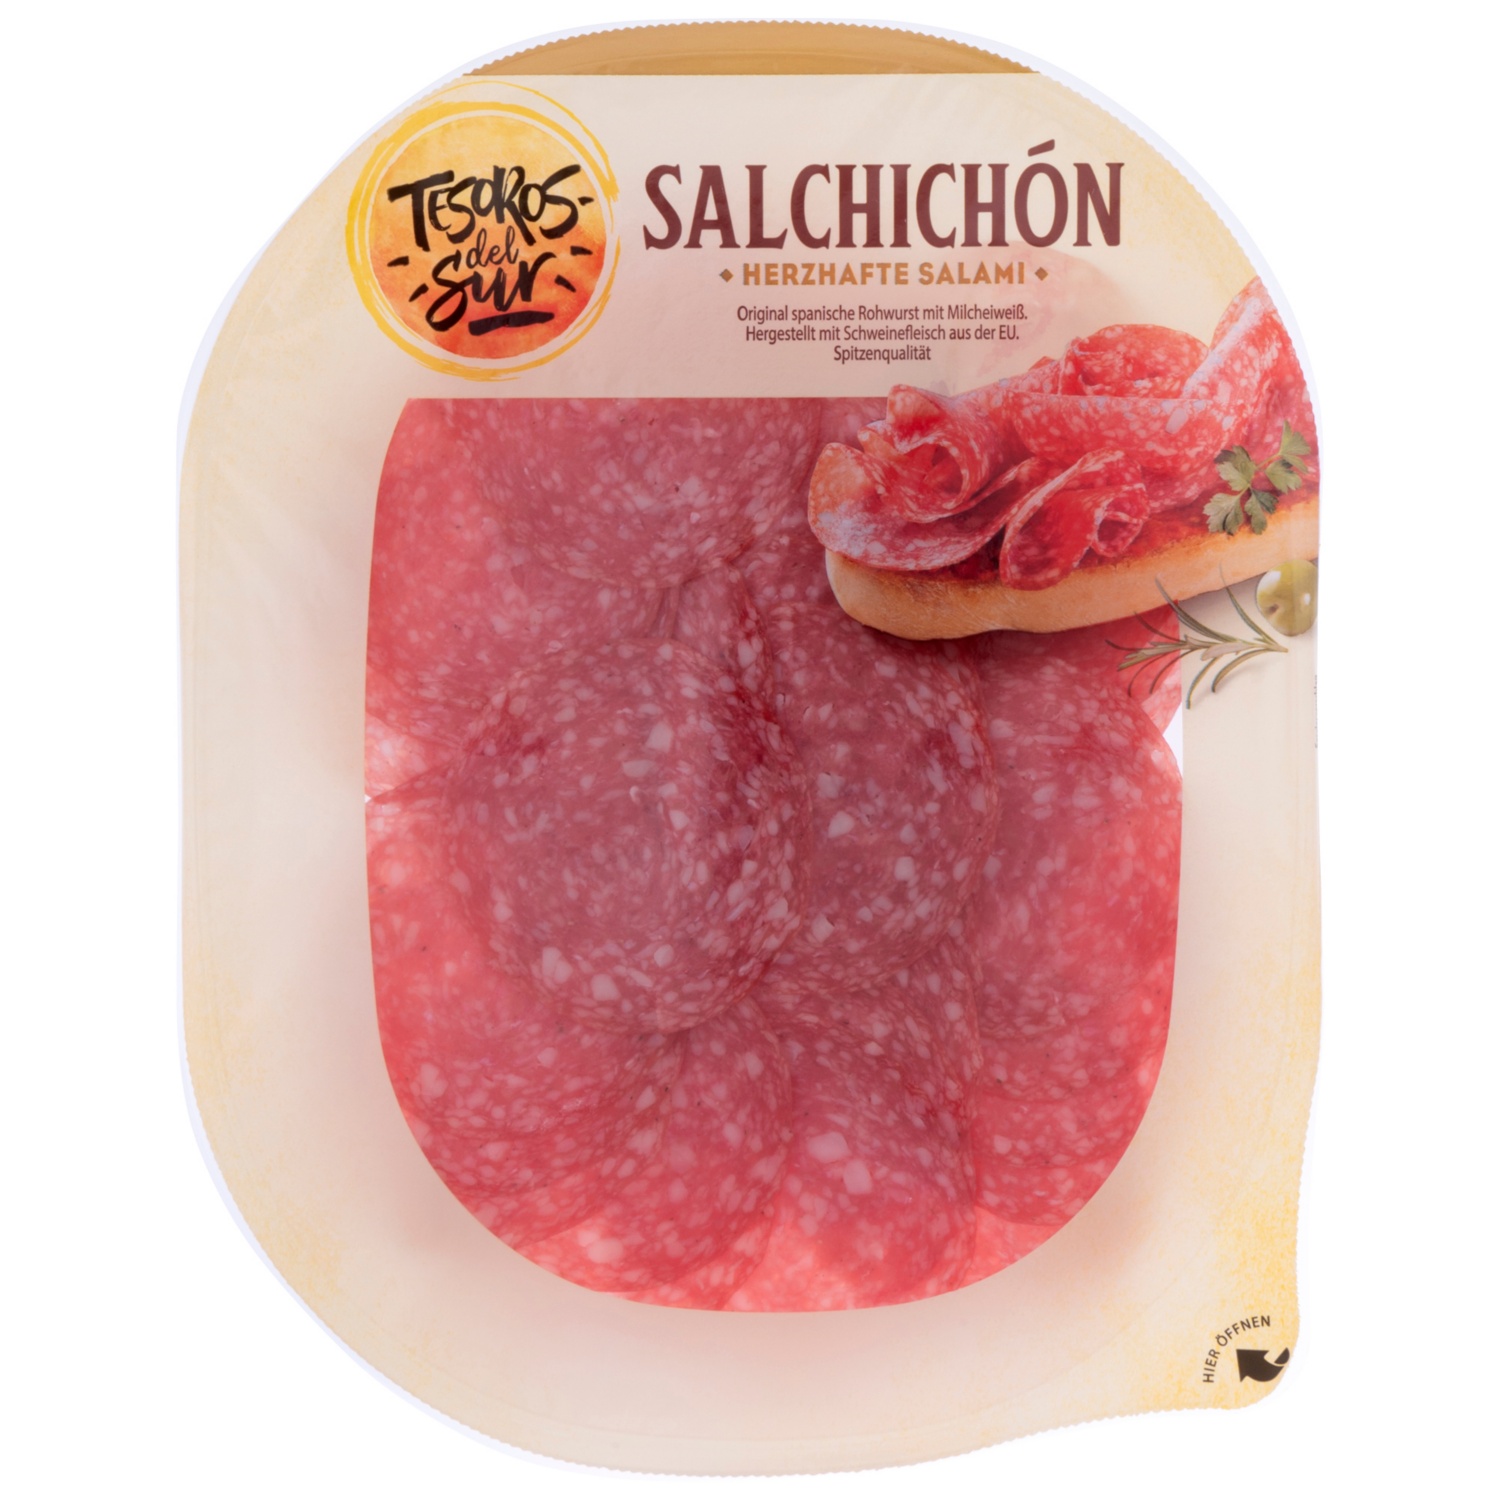 TESOROS DEL SUR, Spanisches Salami-Sortiment, Salsichon